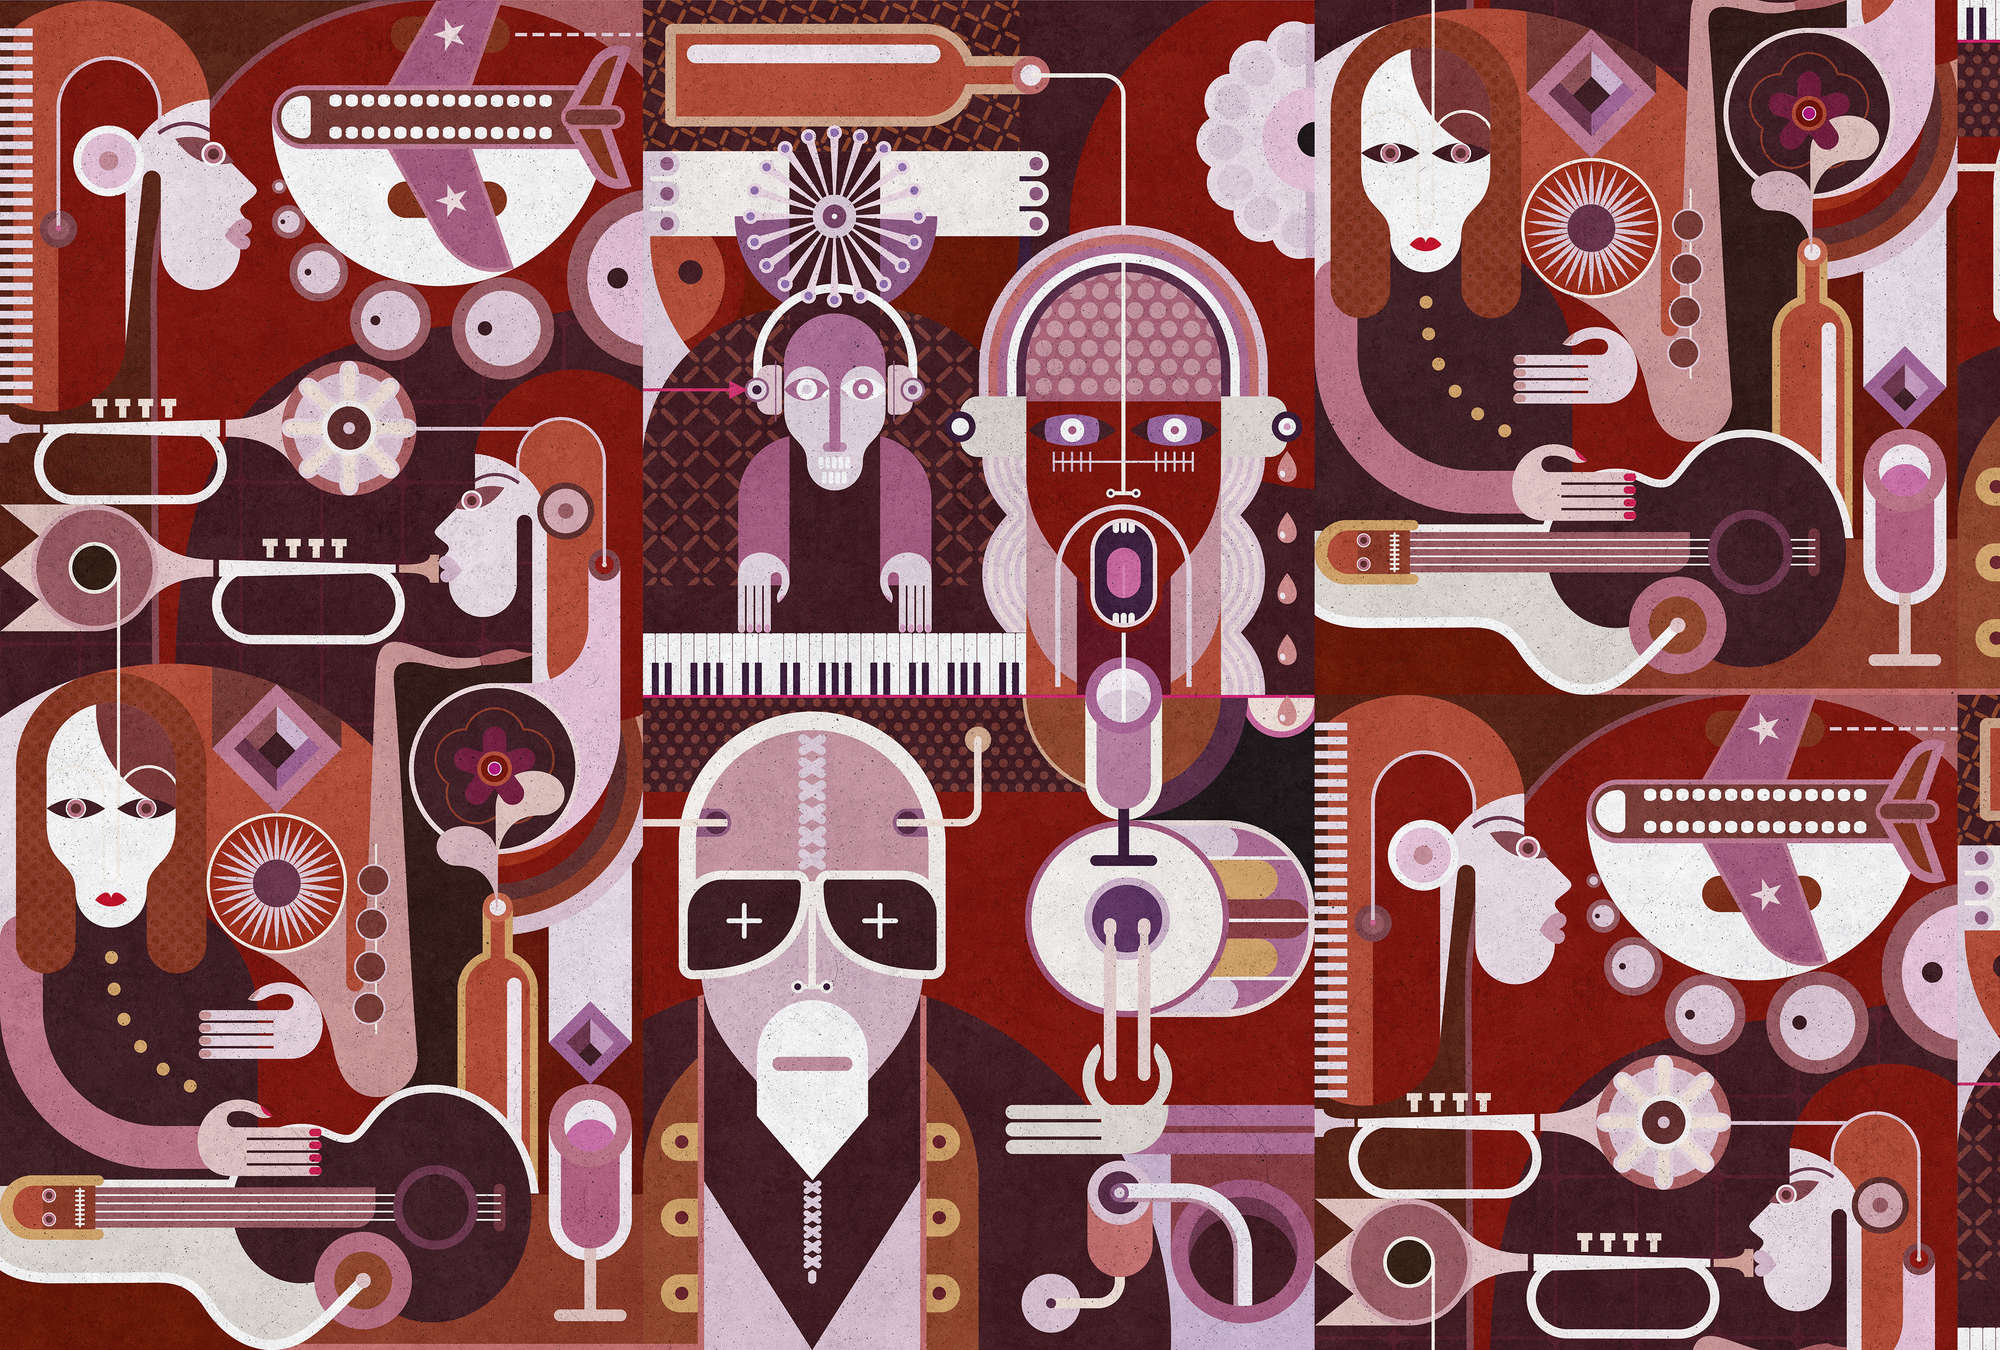             Wall of sound 2 - Papier peint abstrait avec des visages dans une structure en béton - gris, rose | Premium intissé lisse
        